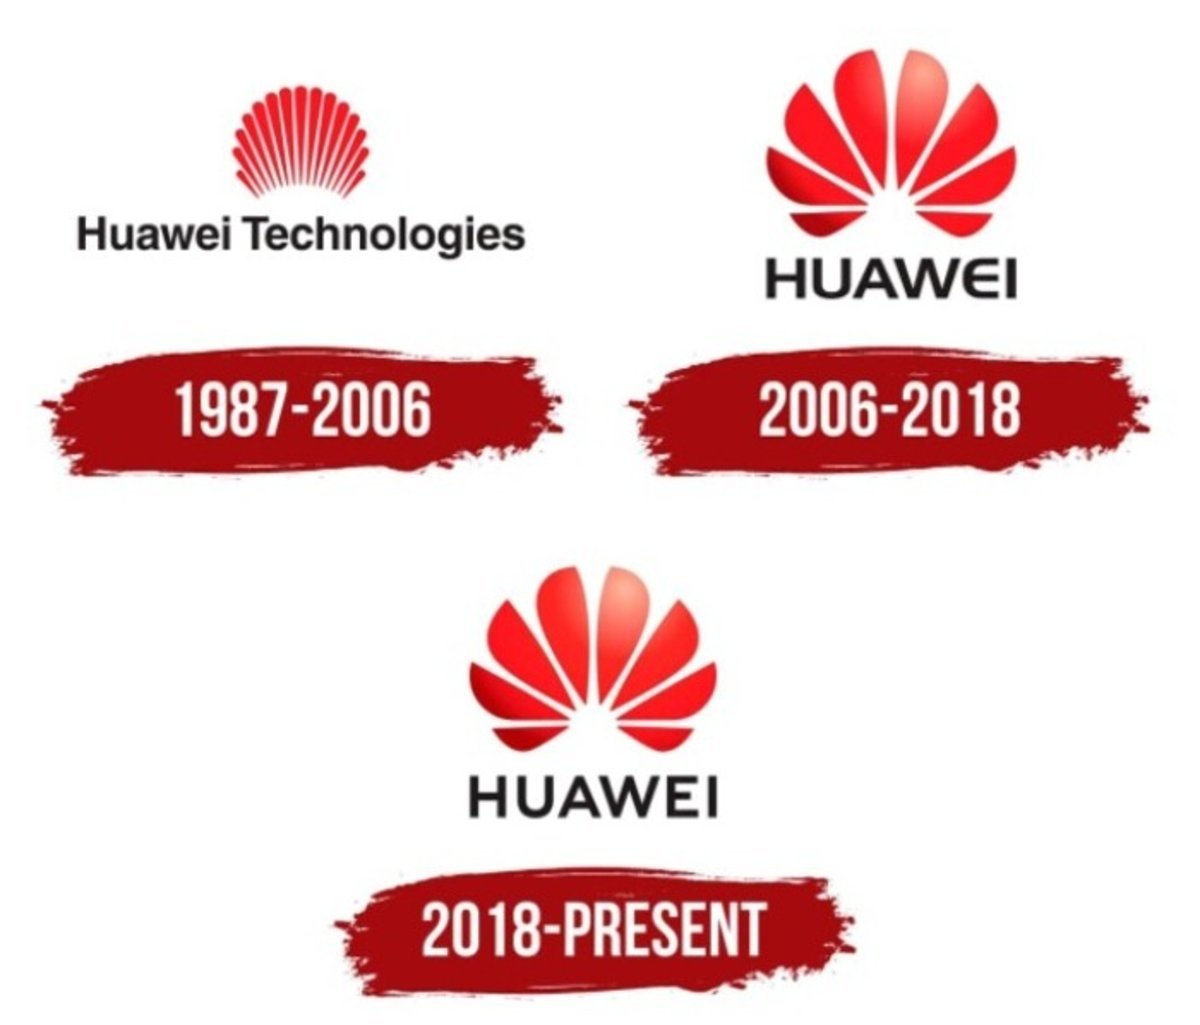 El logo de Huawei representa una flor de Asia